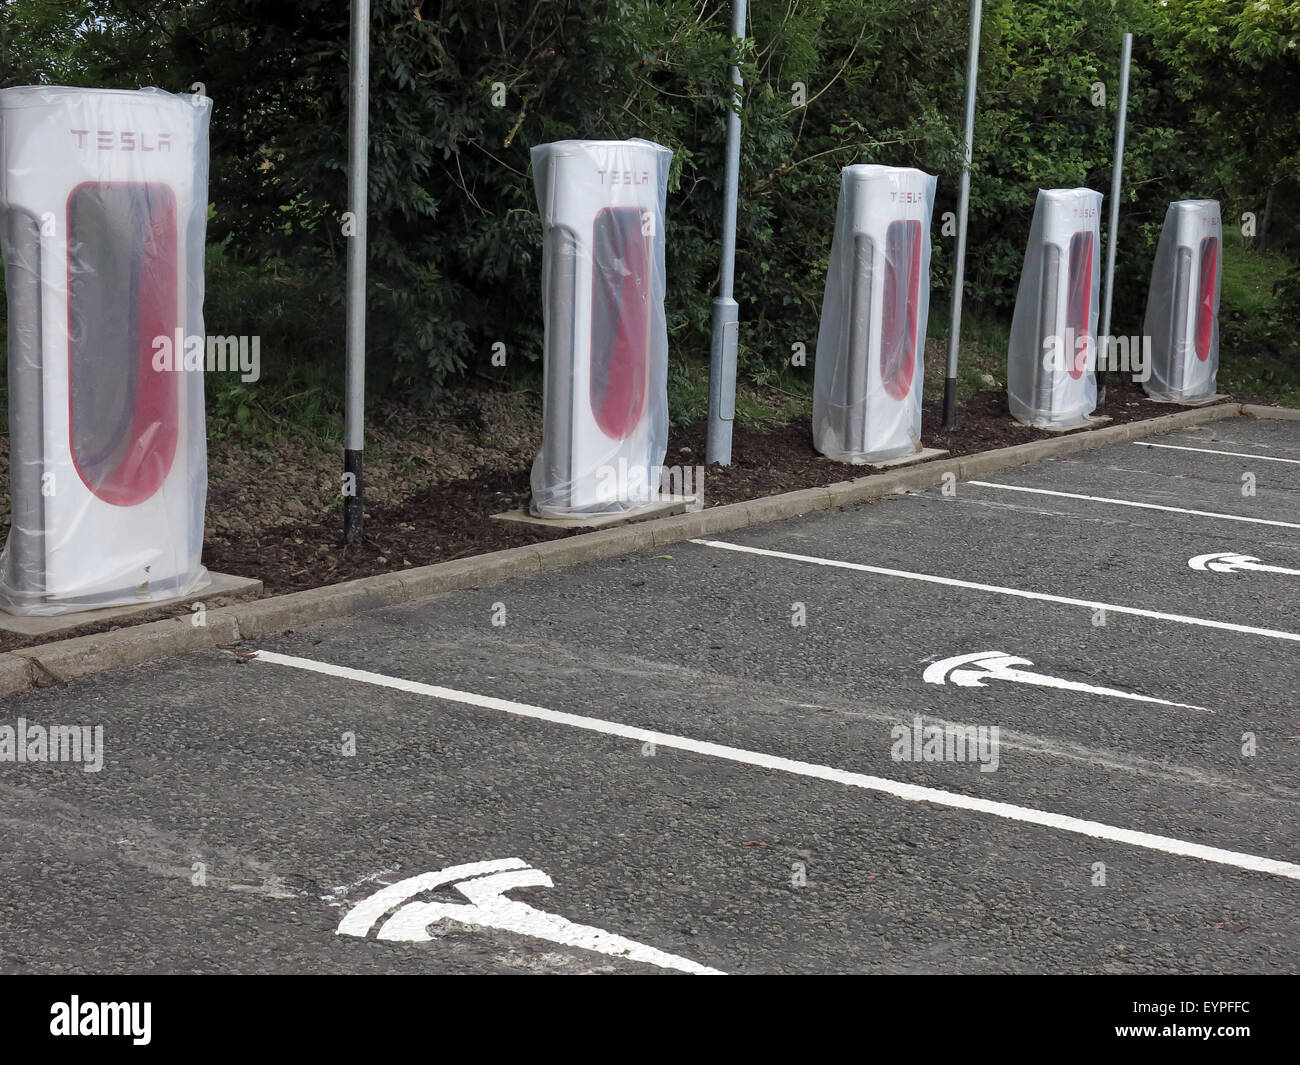 Points de charge Tesla mis en œuvre sur une zone de service sur autoroute au Royaume-Uni Banque D'Images